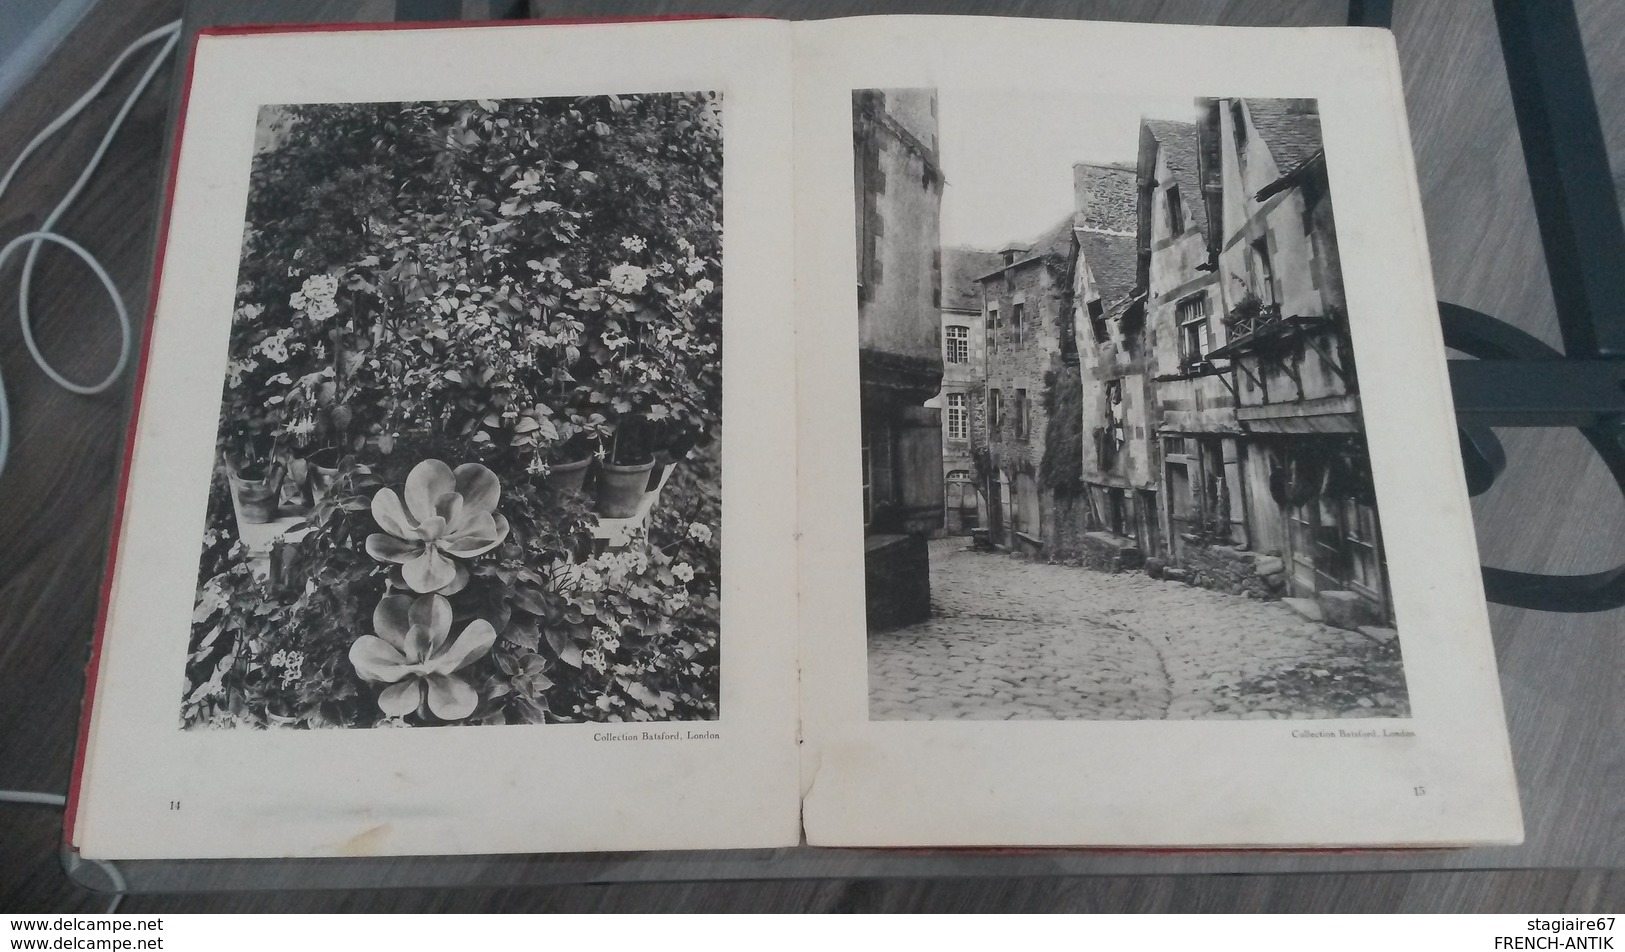 LIVRE VIELLE PHOTOGRAPHIE EDITION PARIS HENRI LEFEBRE 1935 NADAR KORTY CROMER DANHELOVSKY GUERRE DE SECESSION WASHINGTON - 1901-1940